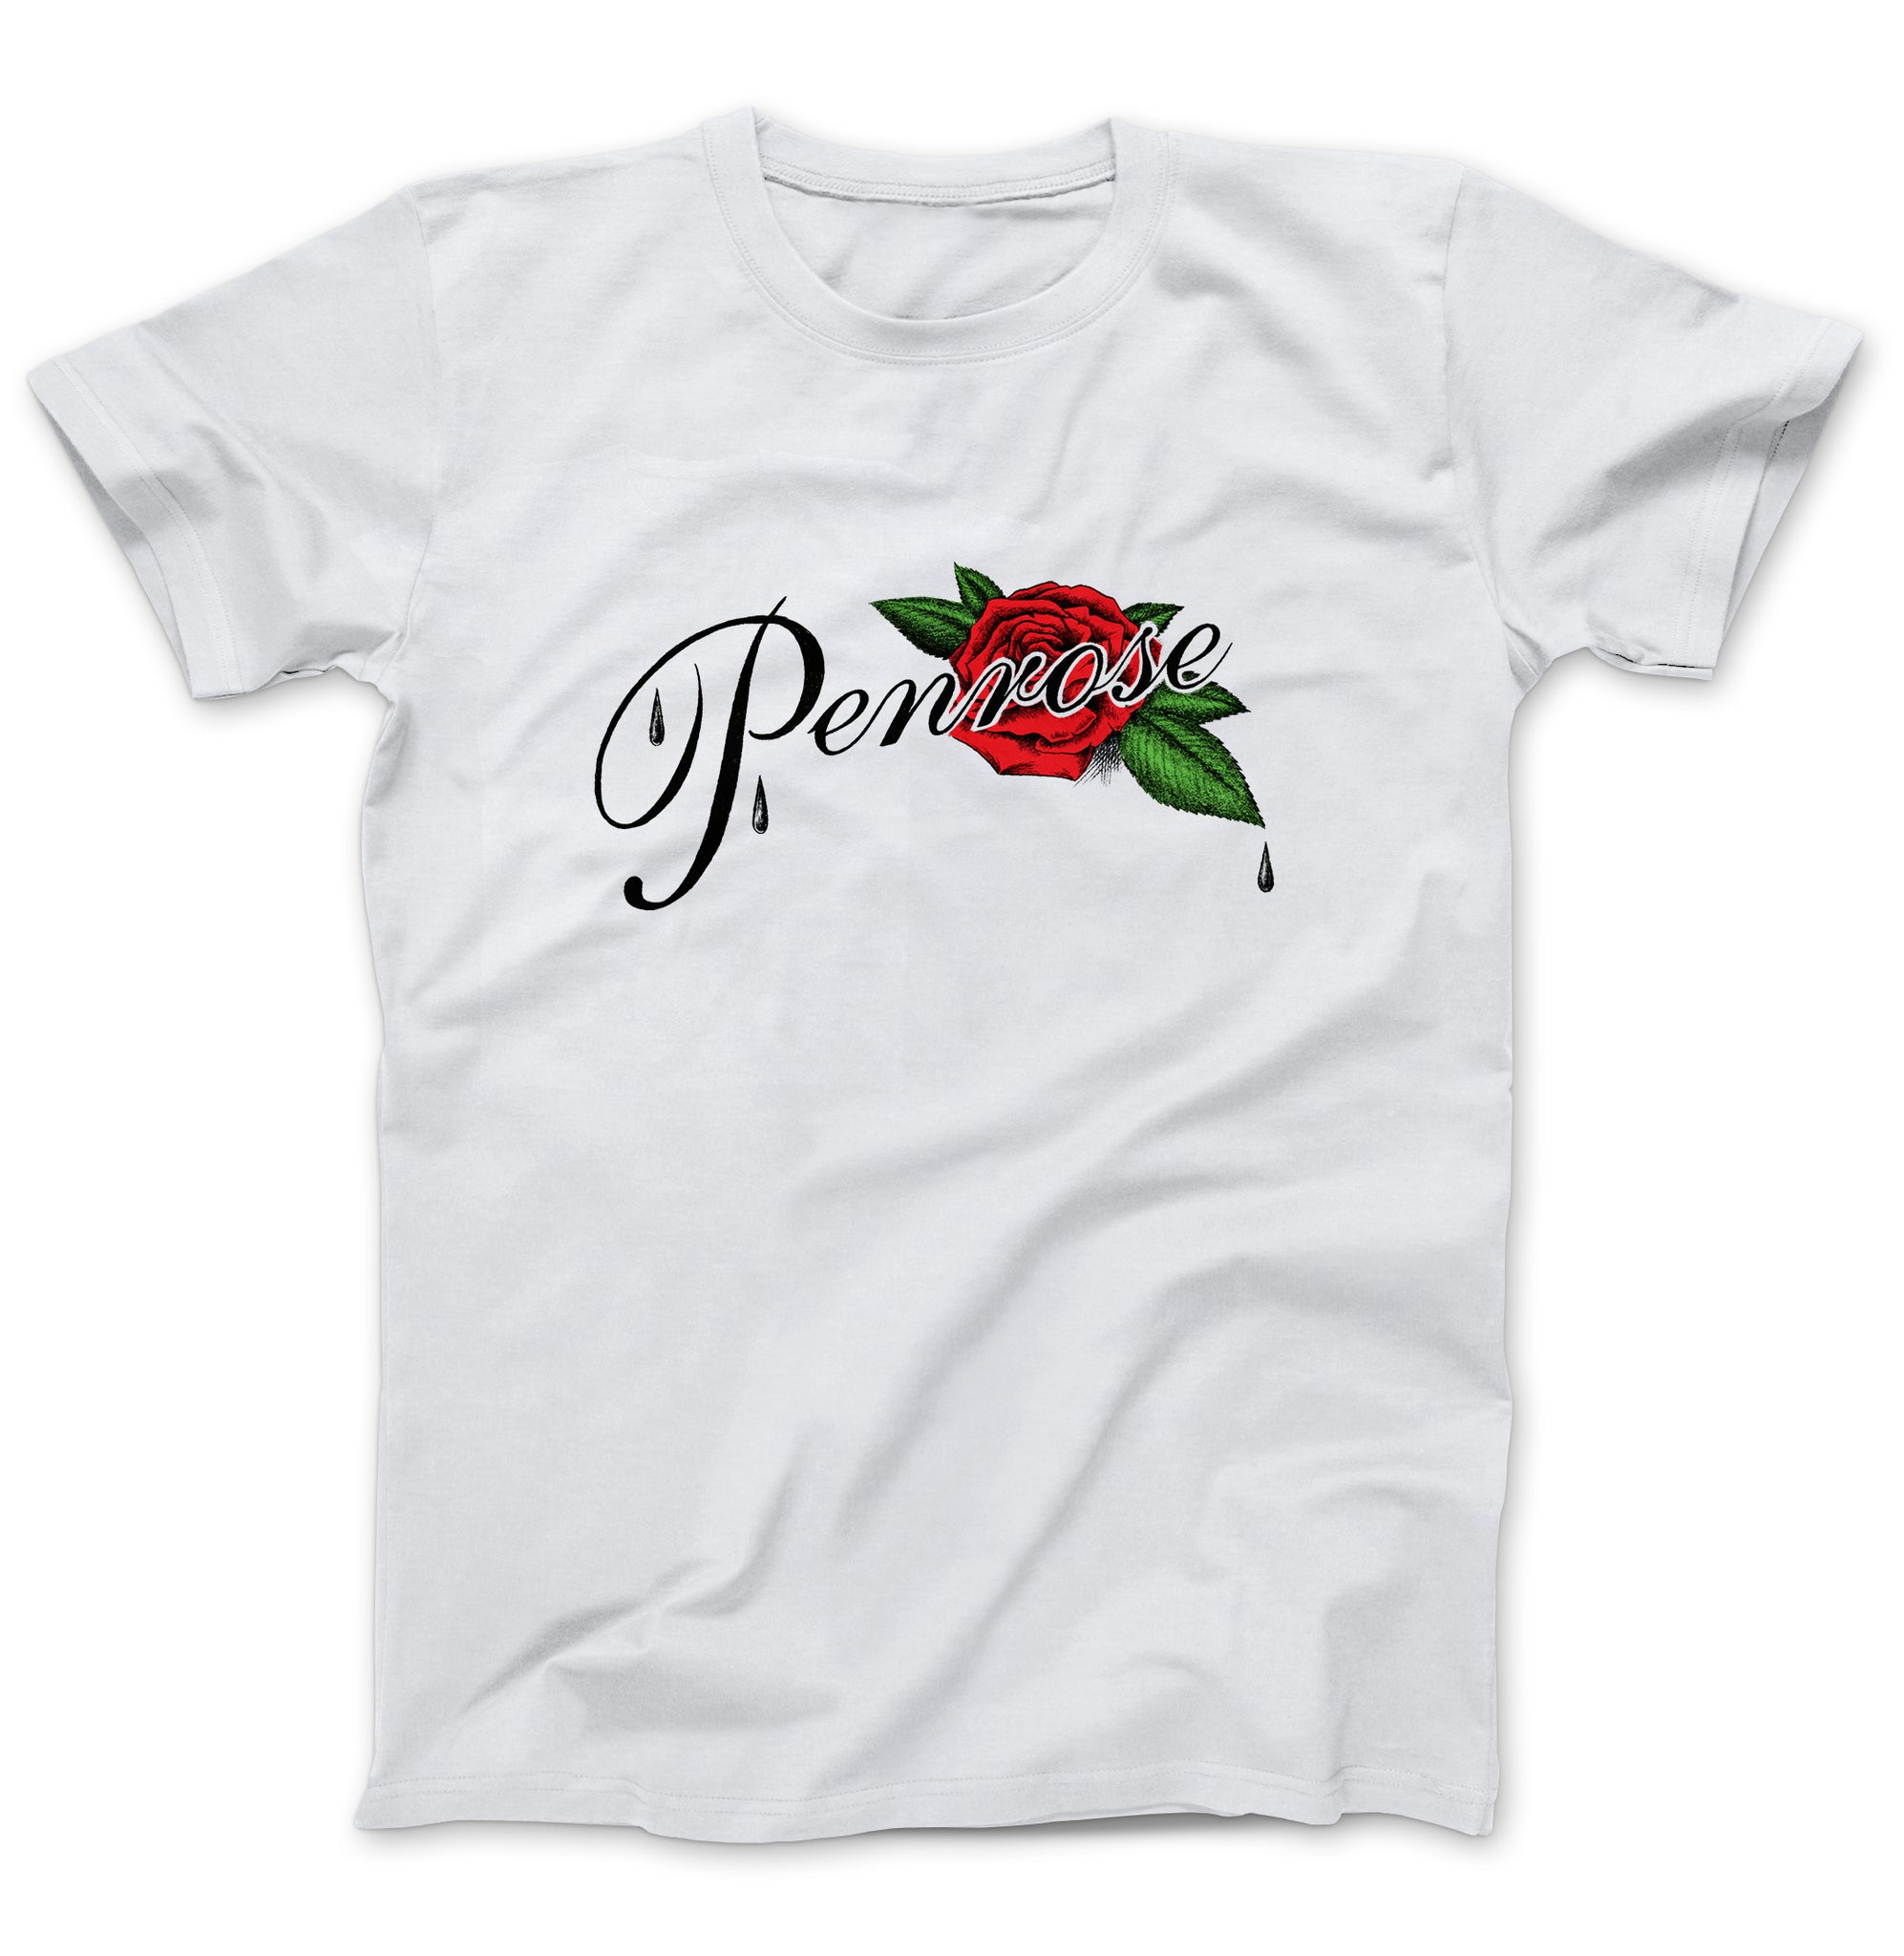 Penrose Records White T-shirt